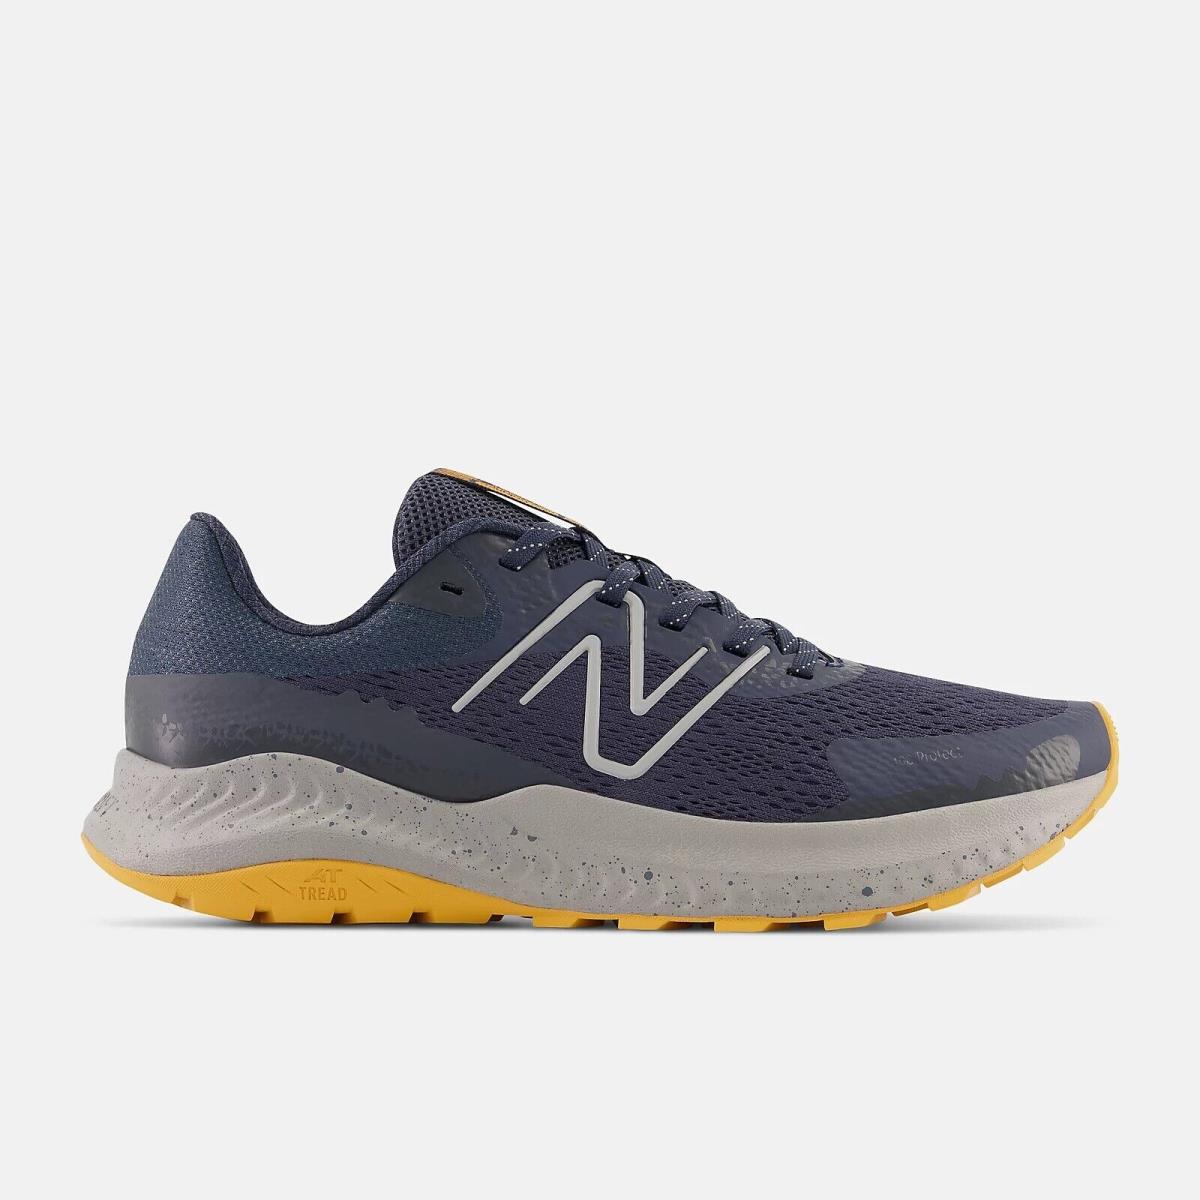 New Balance Men`s Trail Running Mesh Upper High Traction Lightweight Shoes Blue